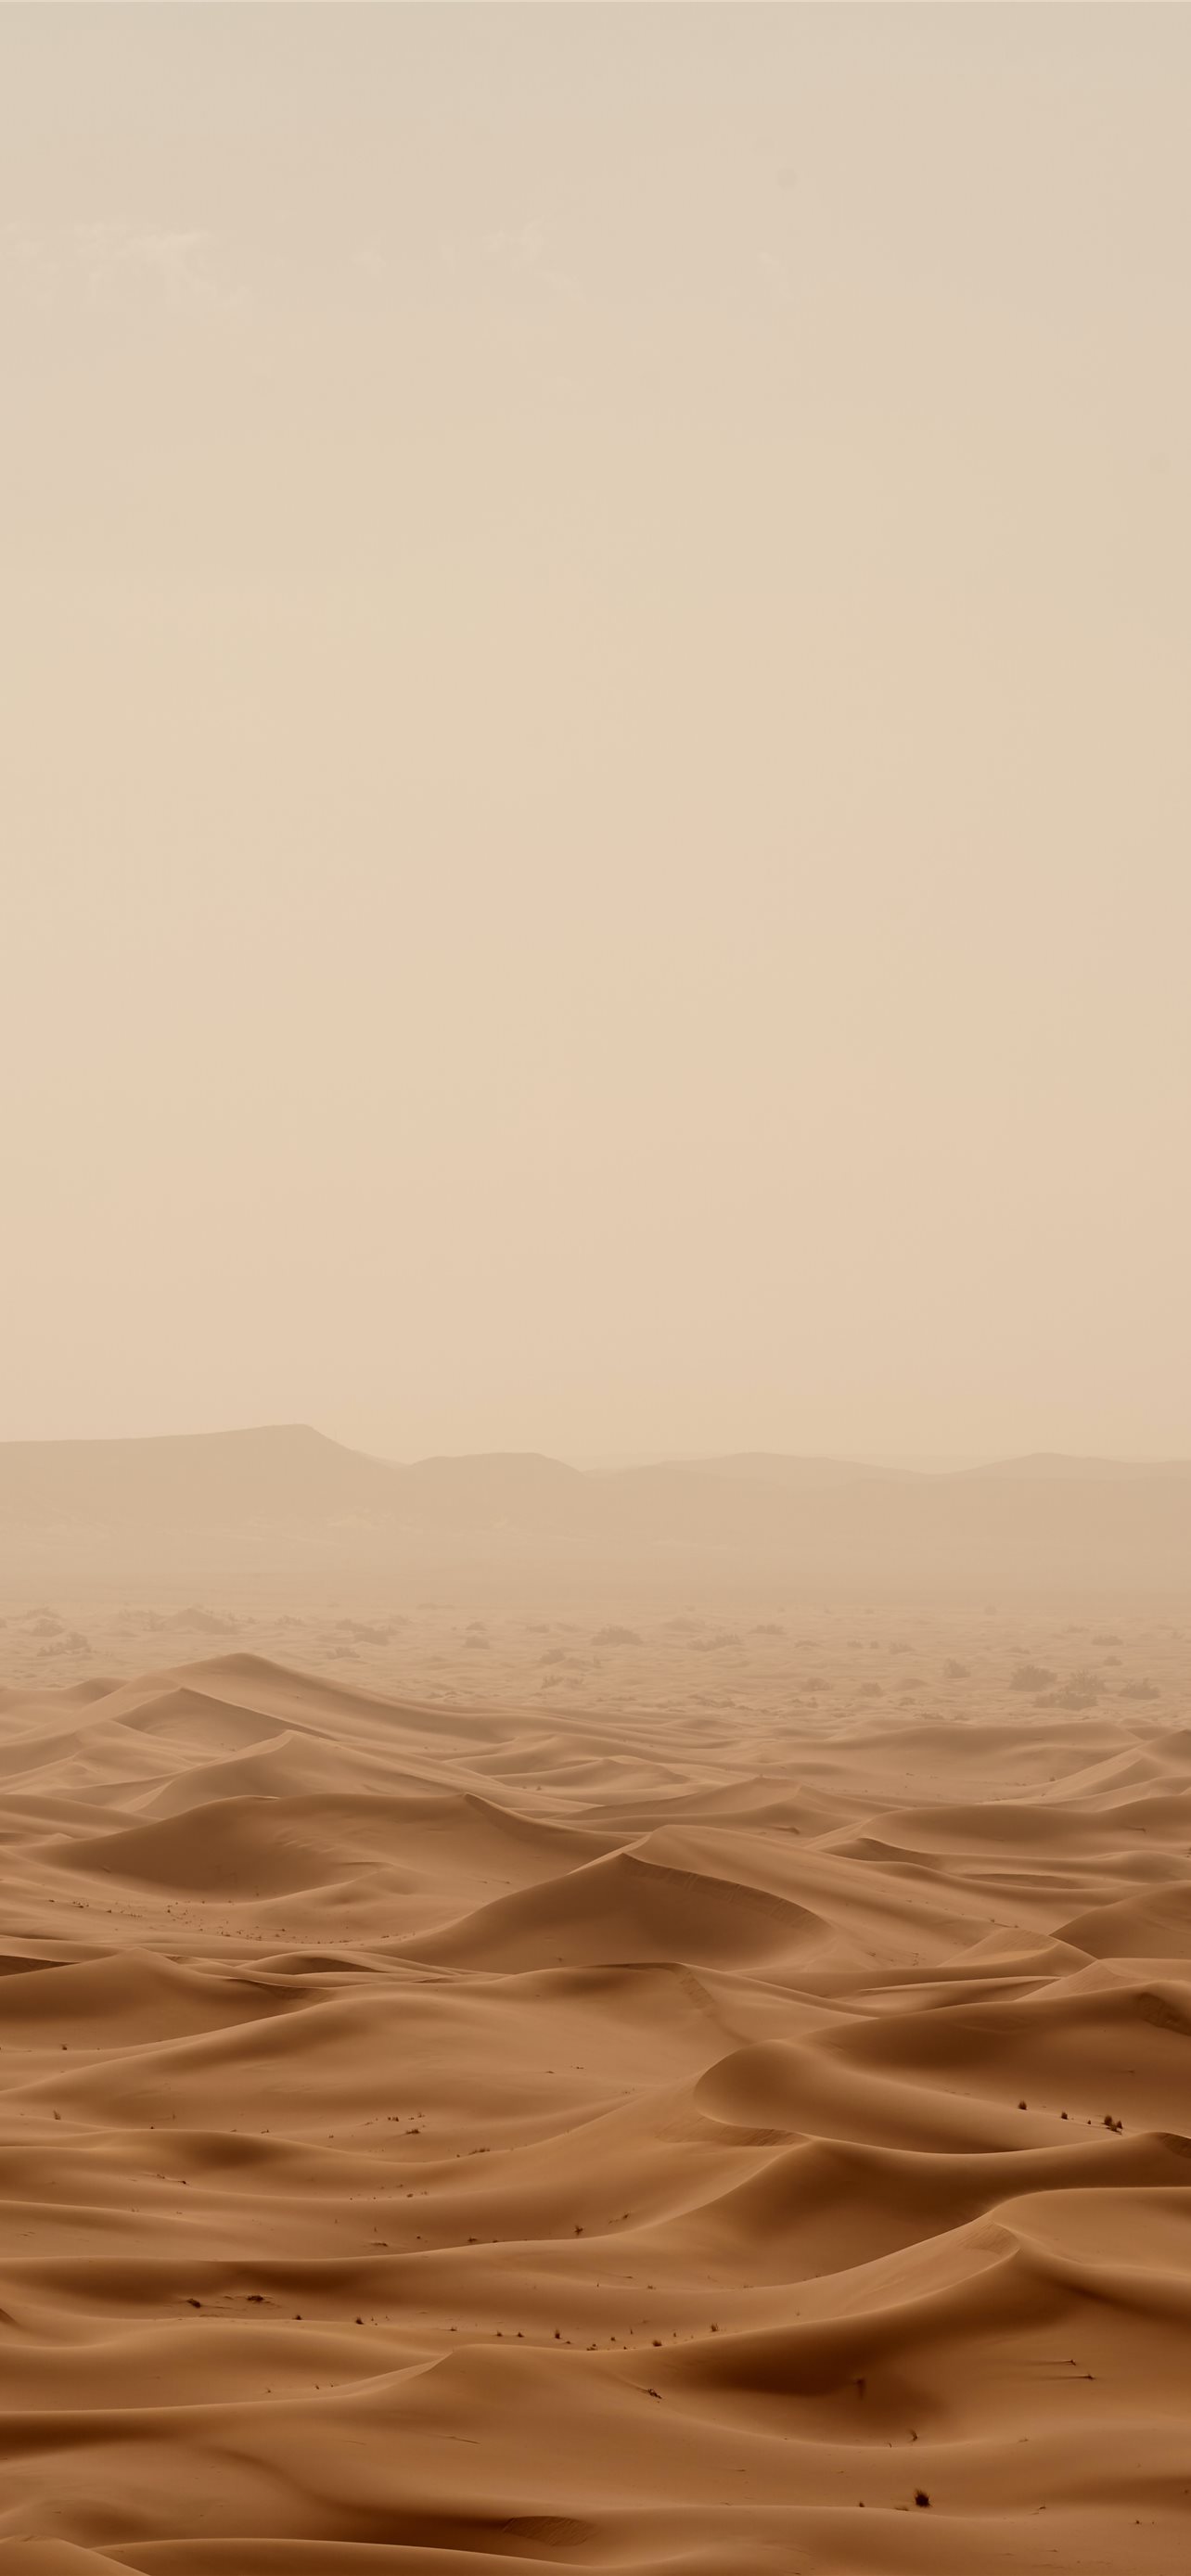 Desert Under White Sky During Daytime iPhone Wallpaper